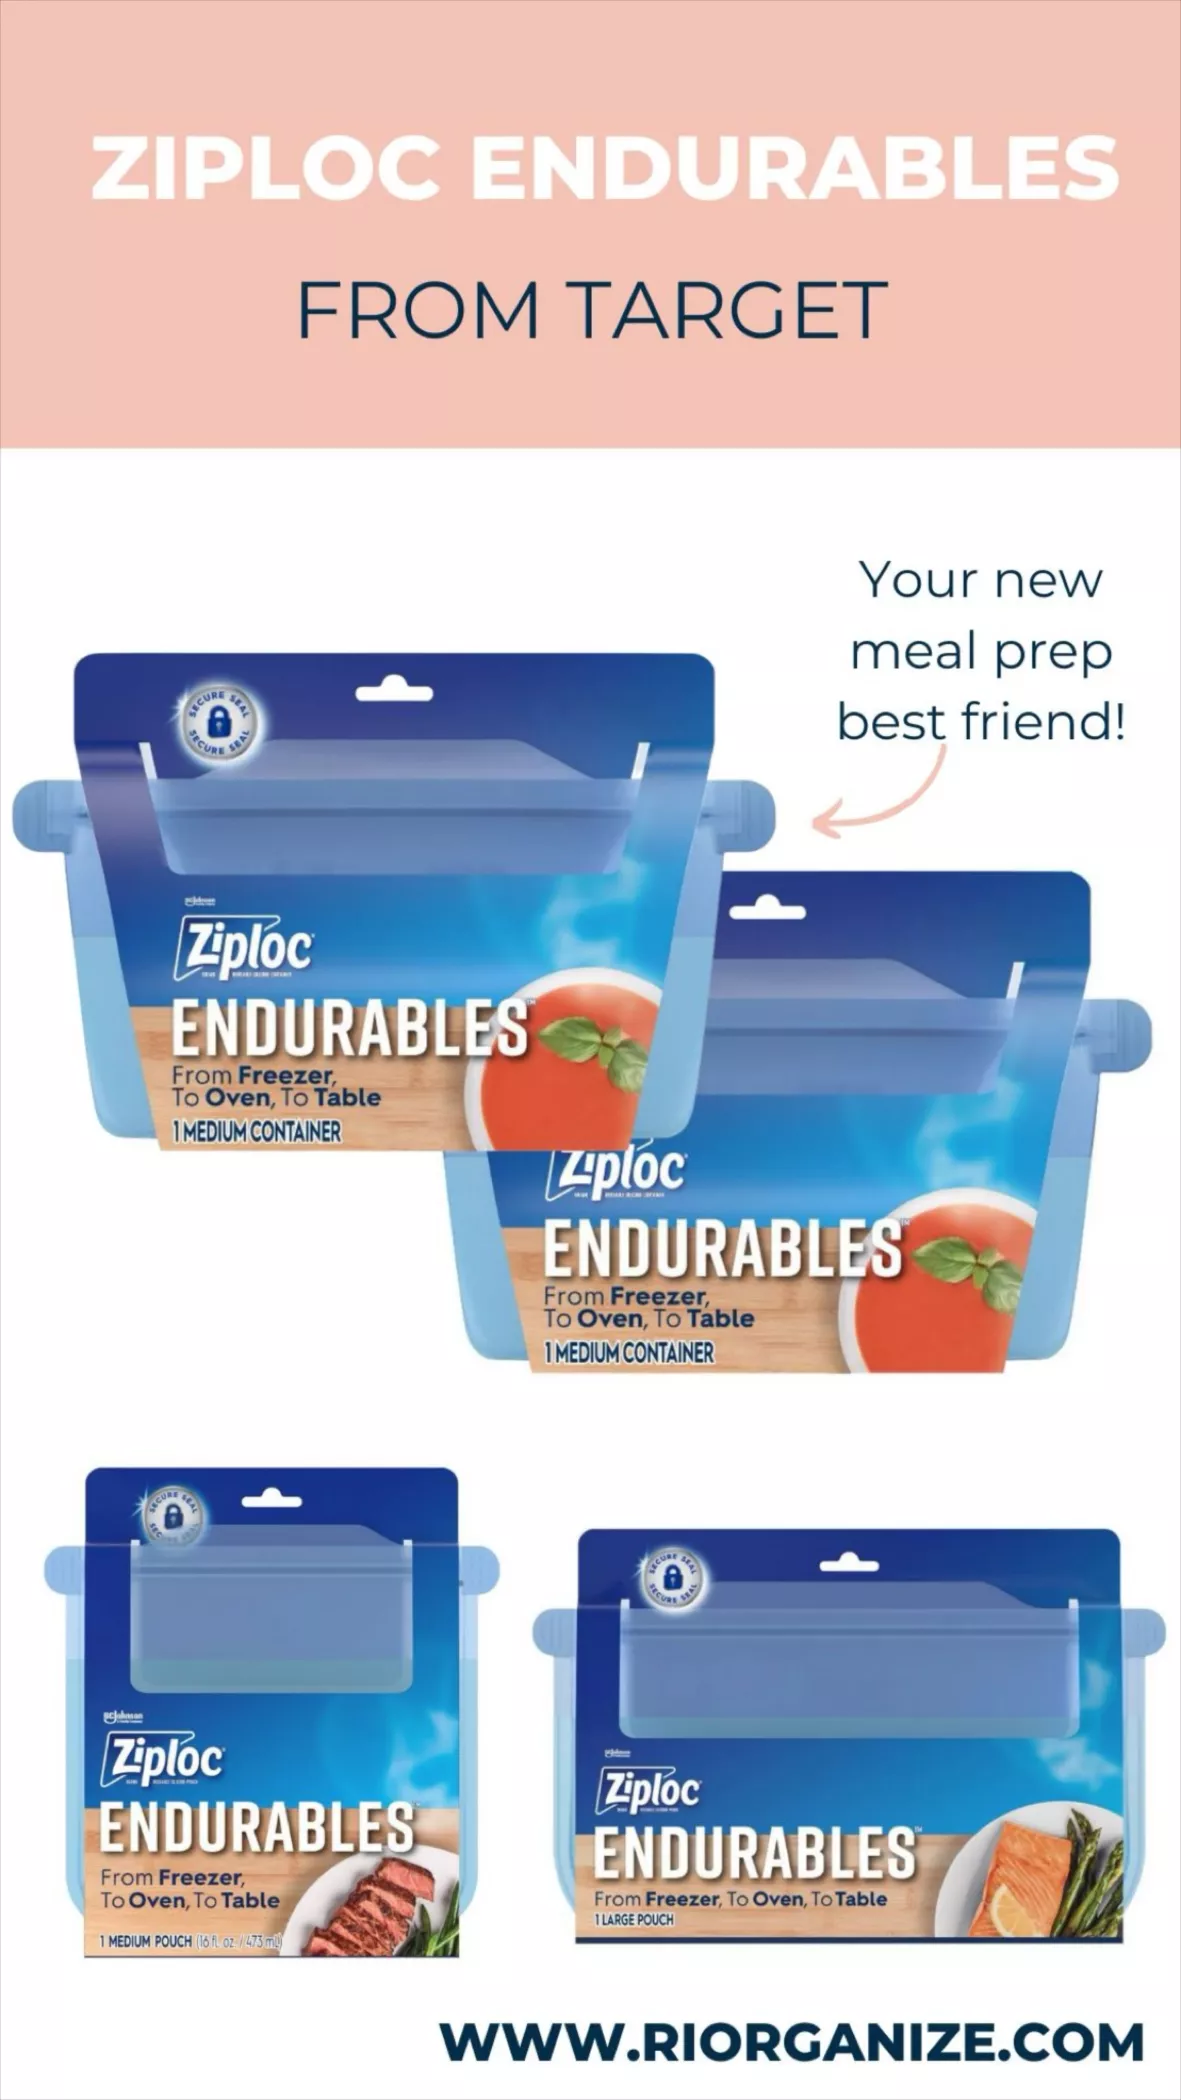 Ziploc Endurables Container, Medium, 32 Ounce